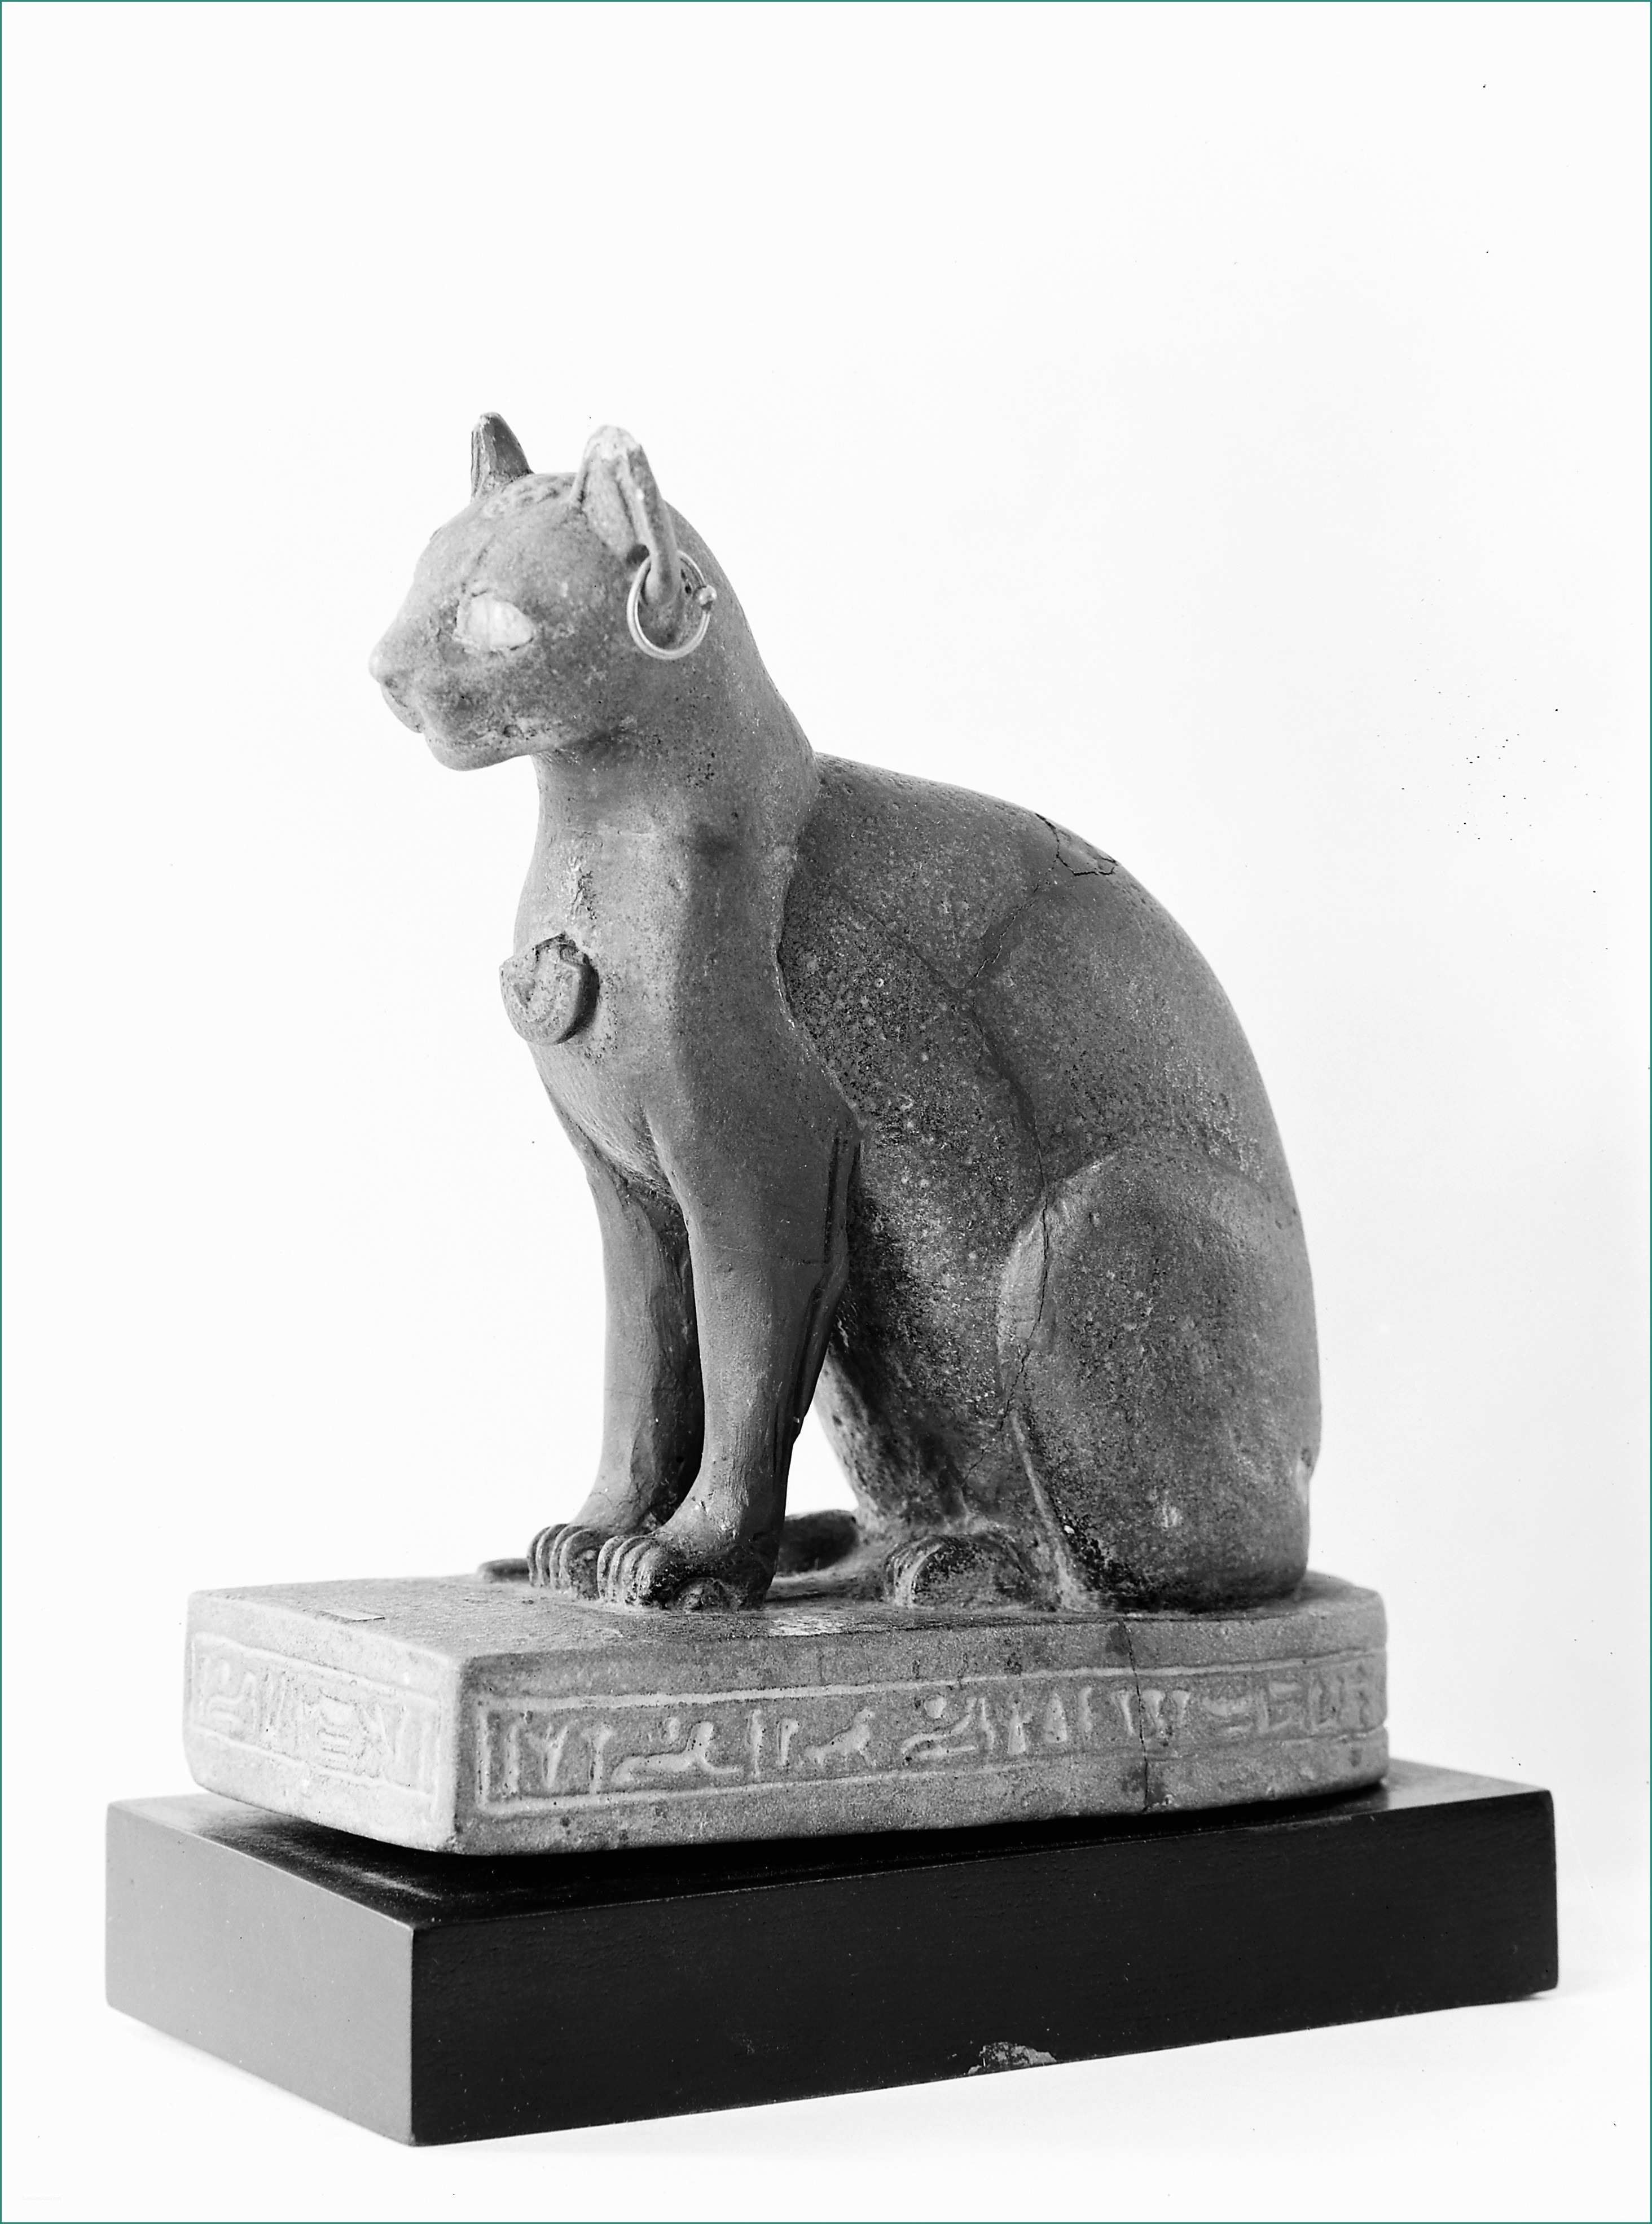 Significato sognare topi E Gatti Nell Antico Egitto